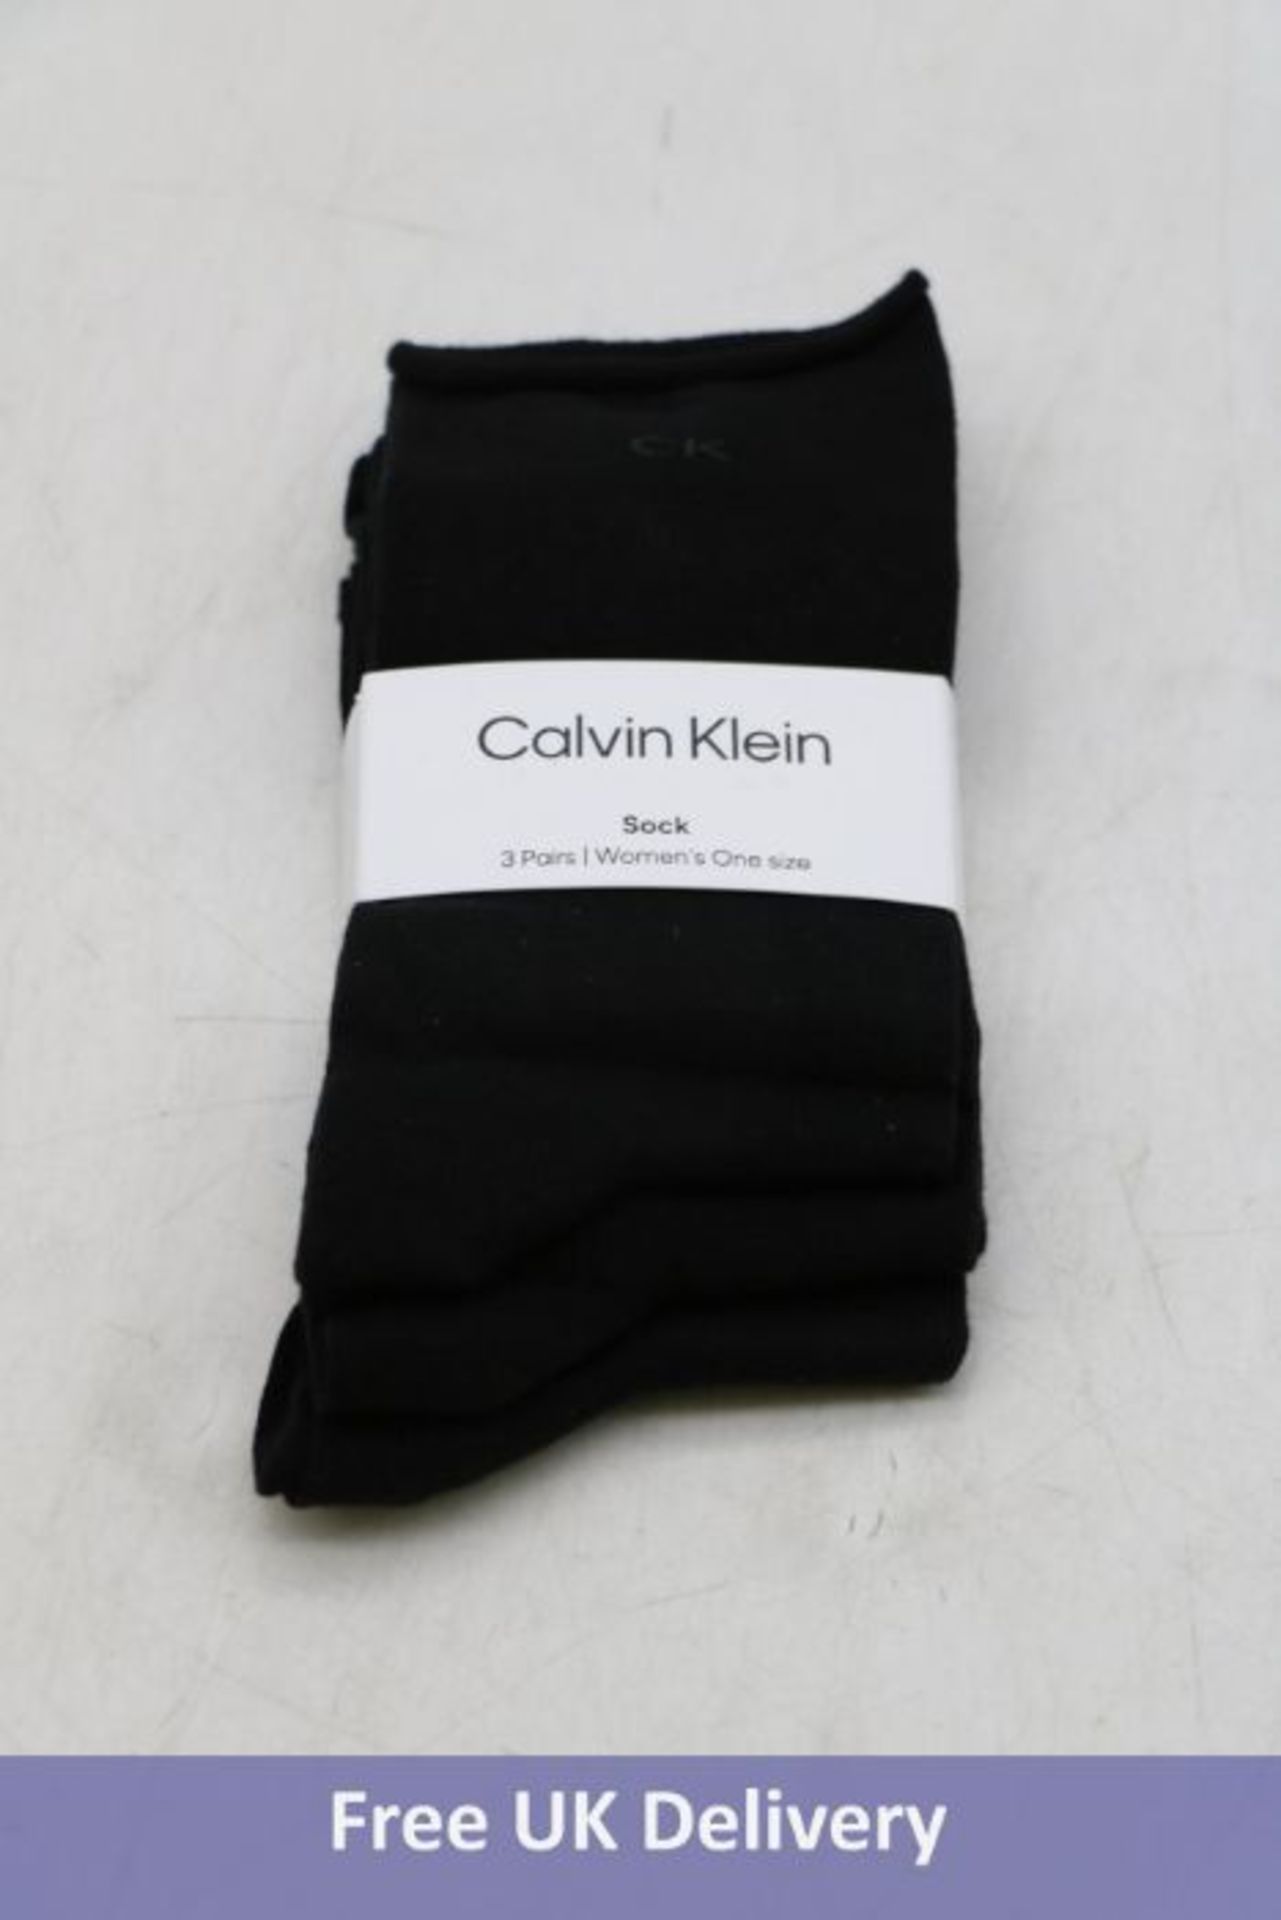 Four Calvin Klein Women's Socks Pack of 3, Black, One Size